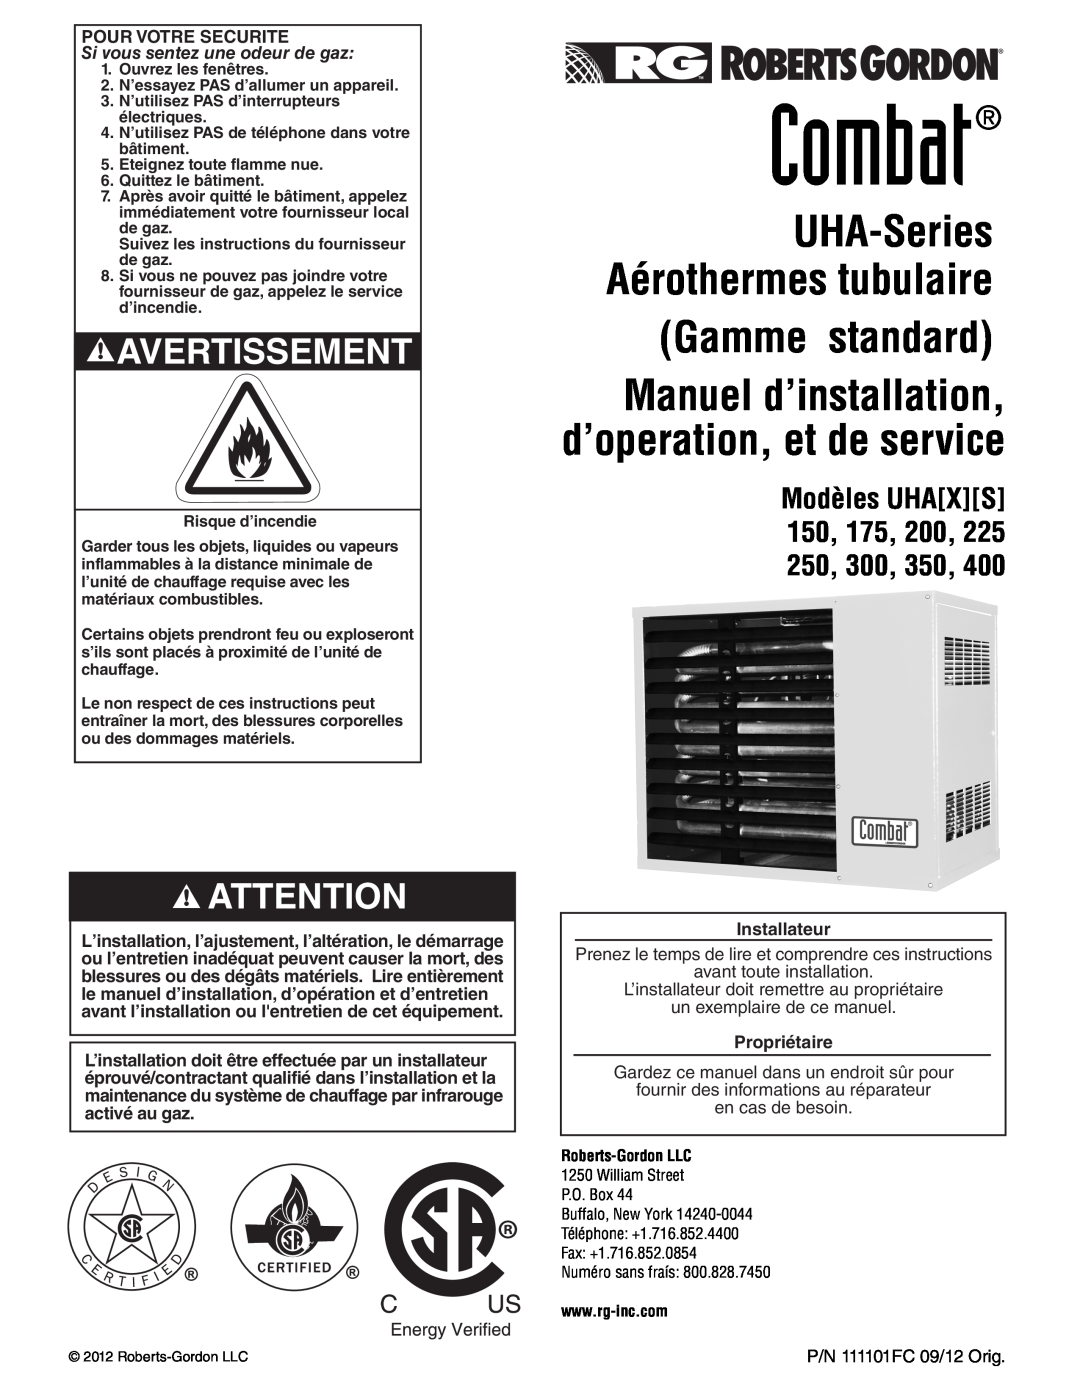 Roberts Gorden 400 service manual Gamme standard, Modèles UHAXS 150, 175, 200, 225 250, 300, 350, Combat, Avertissement 